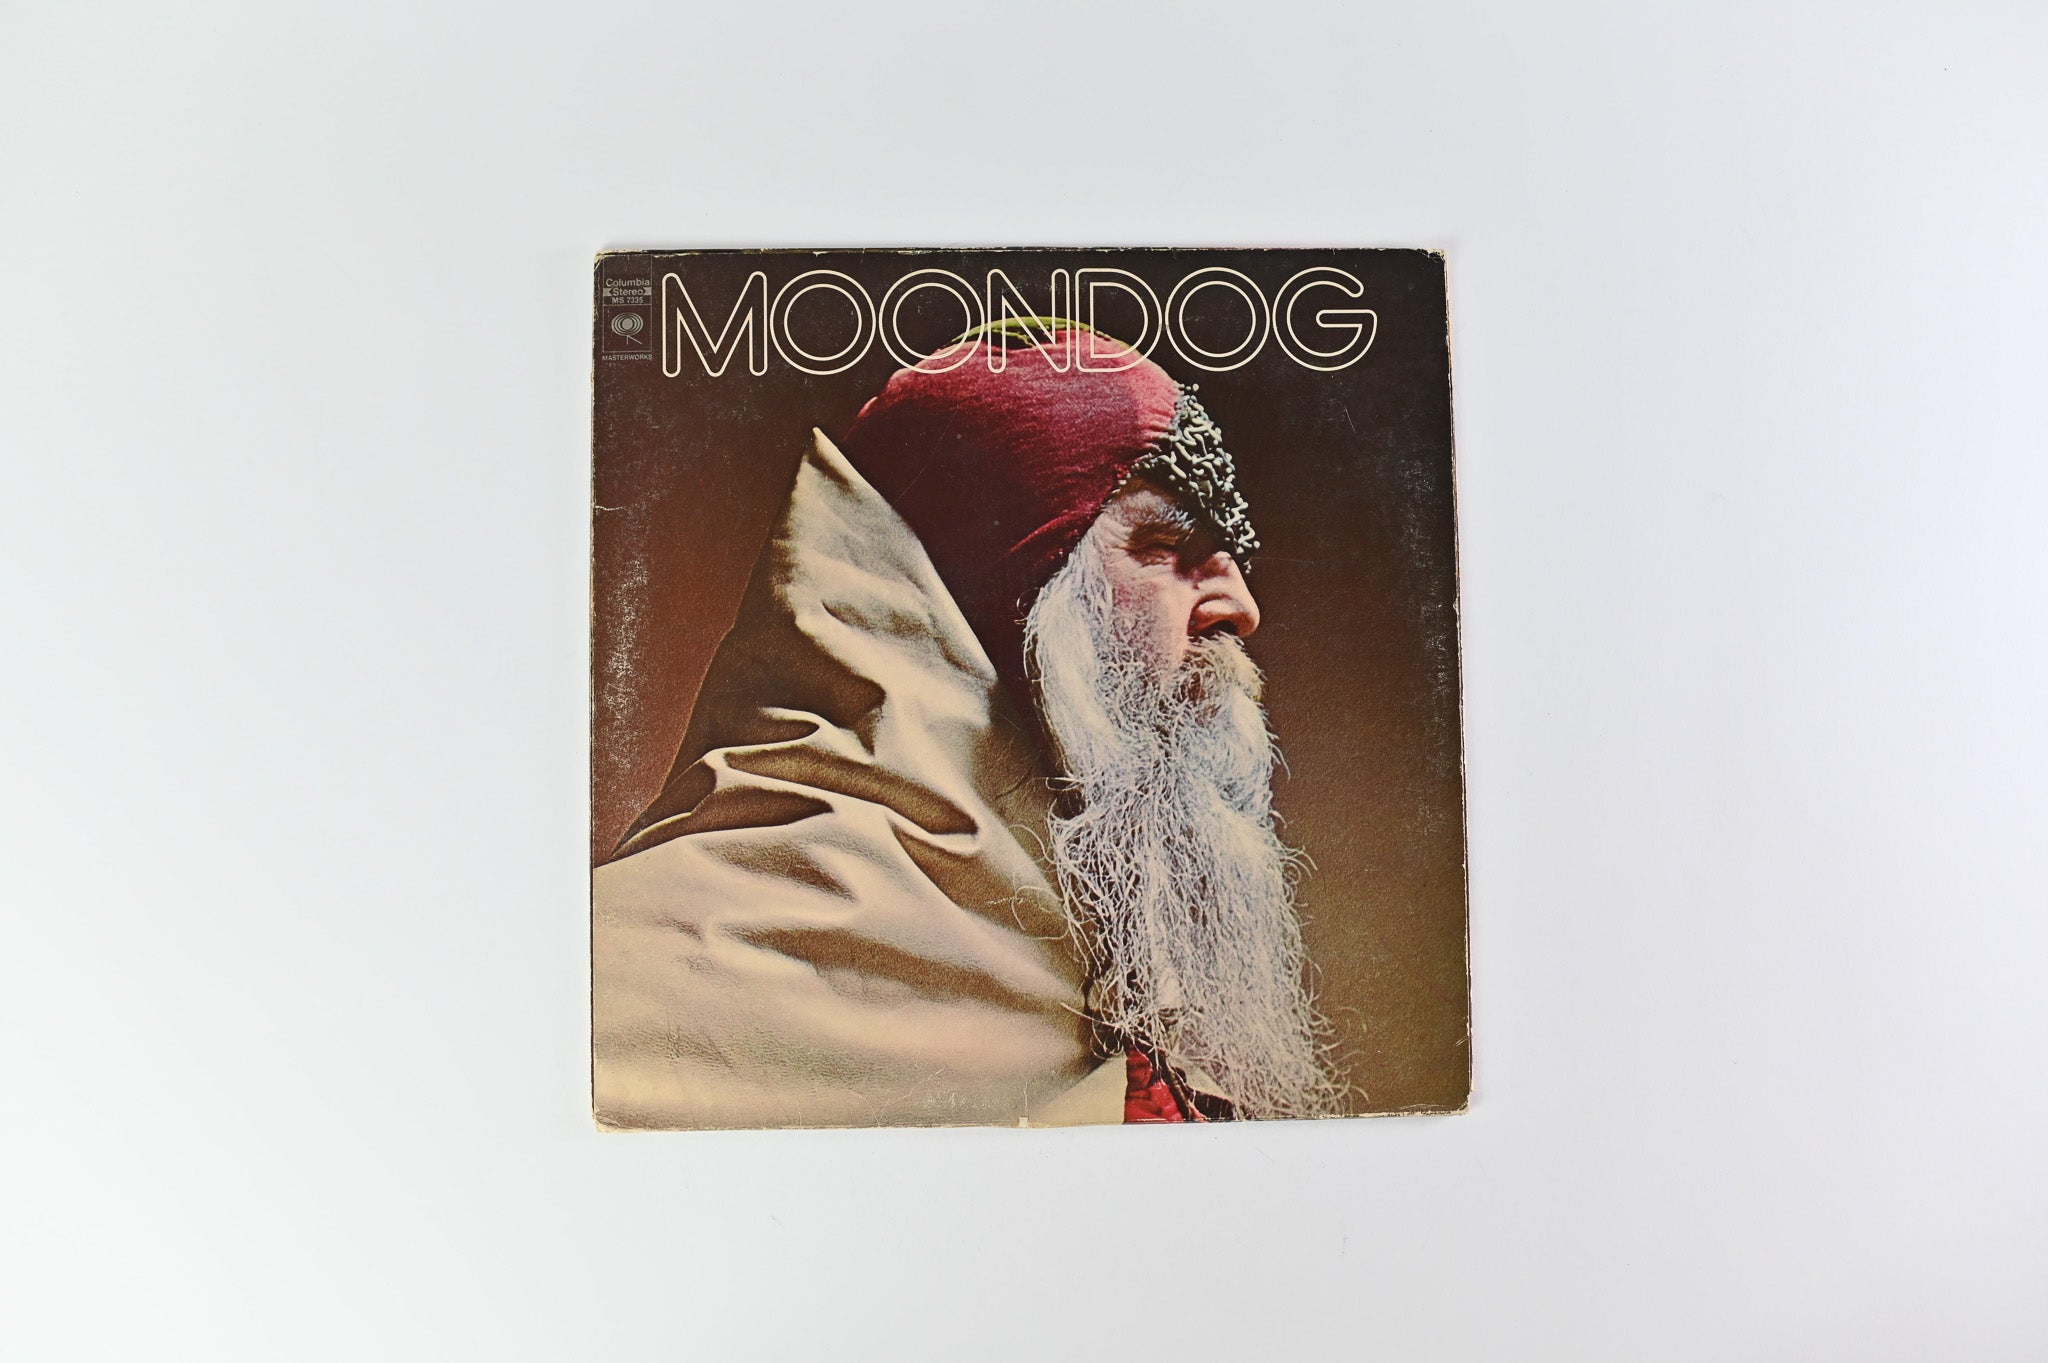 Moondog - Moondog on Columbia Masterworks